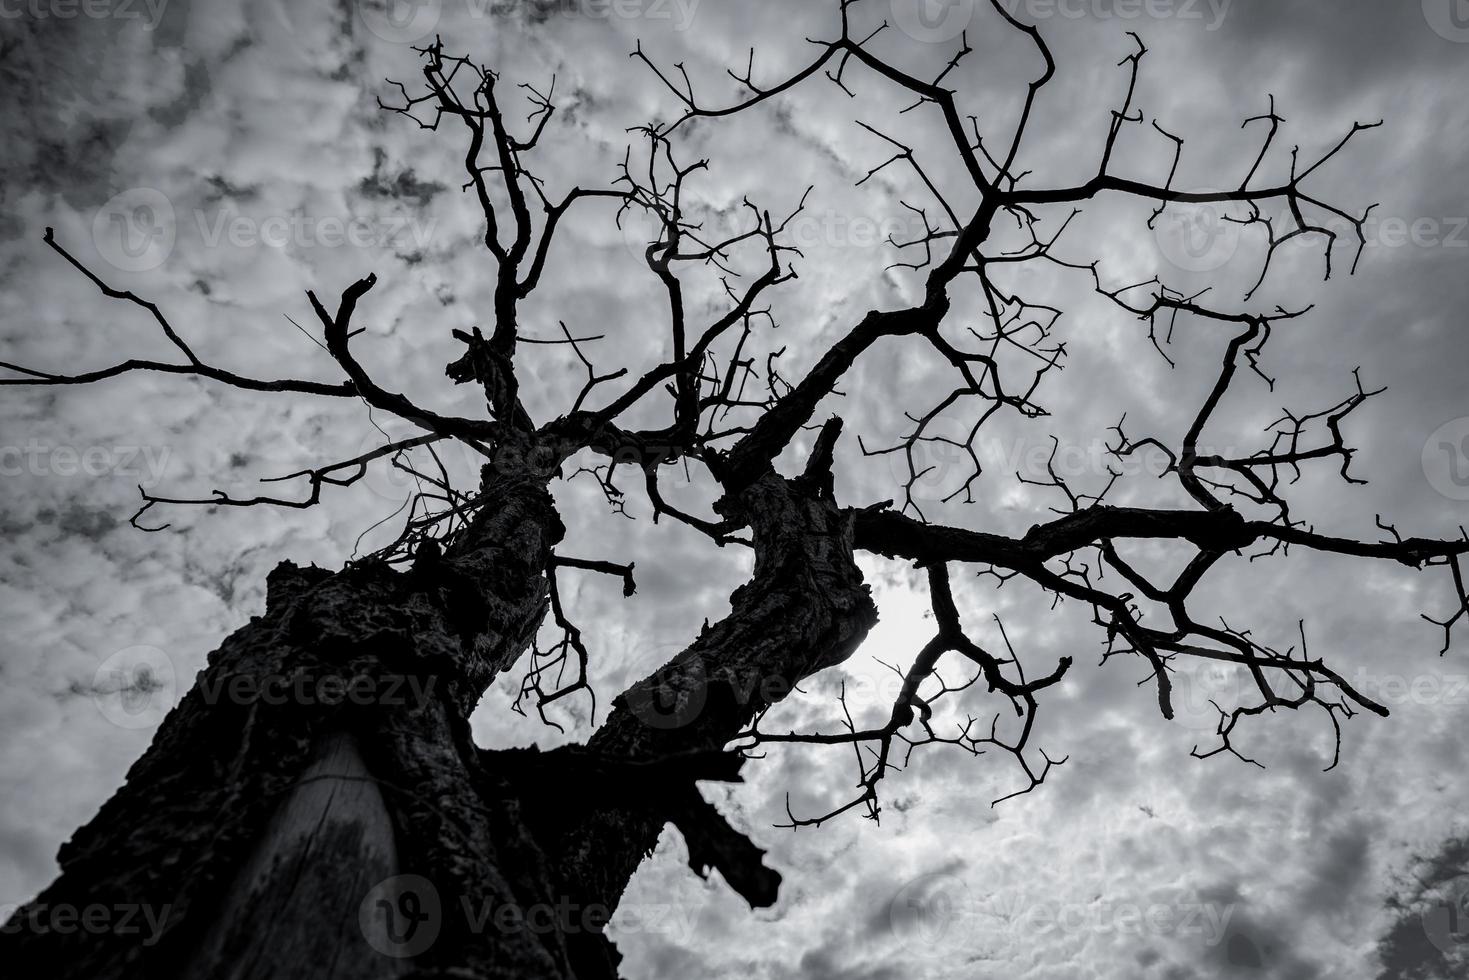 silhouette albero morto sul cielo drammatico scuro e nuvole bianche. concetto di morte, lamento, tristezza, dolore, disperazione e disperazione. sfondo astratto di giorno di halloween. alzando lo sguardo sull'albero morto. albero senza foglie. foto